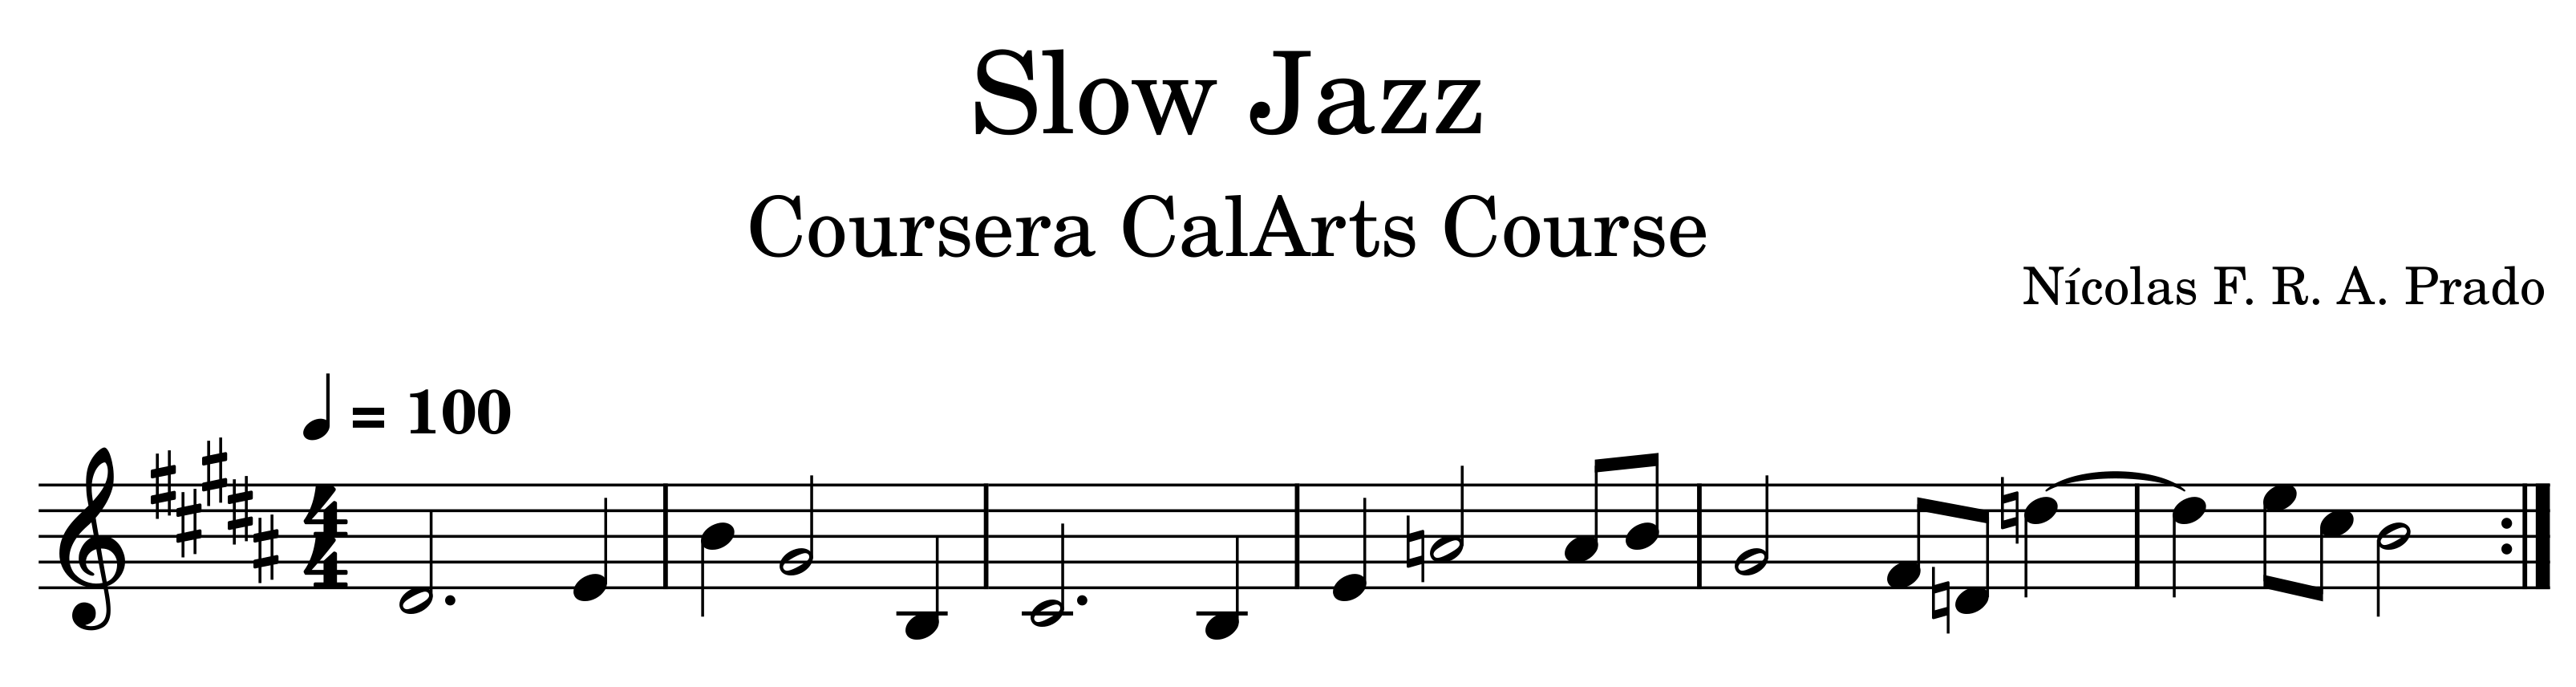 Partitura da melodia de jazz lento